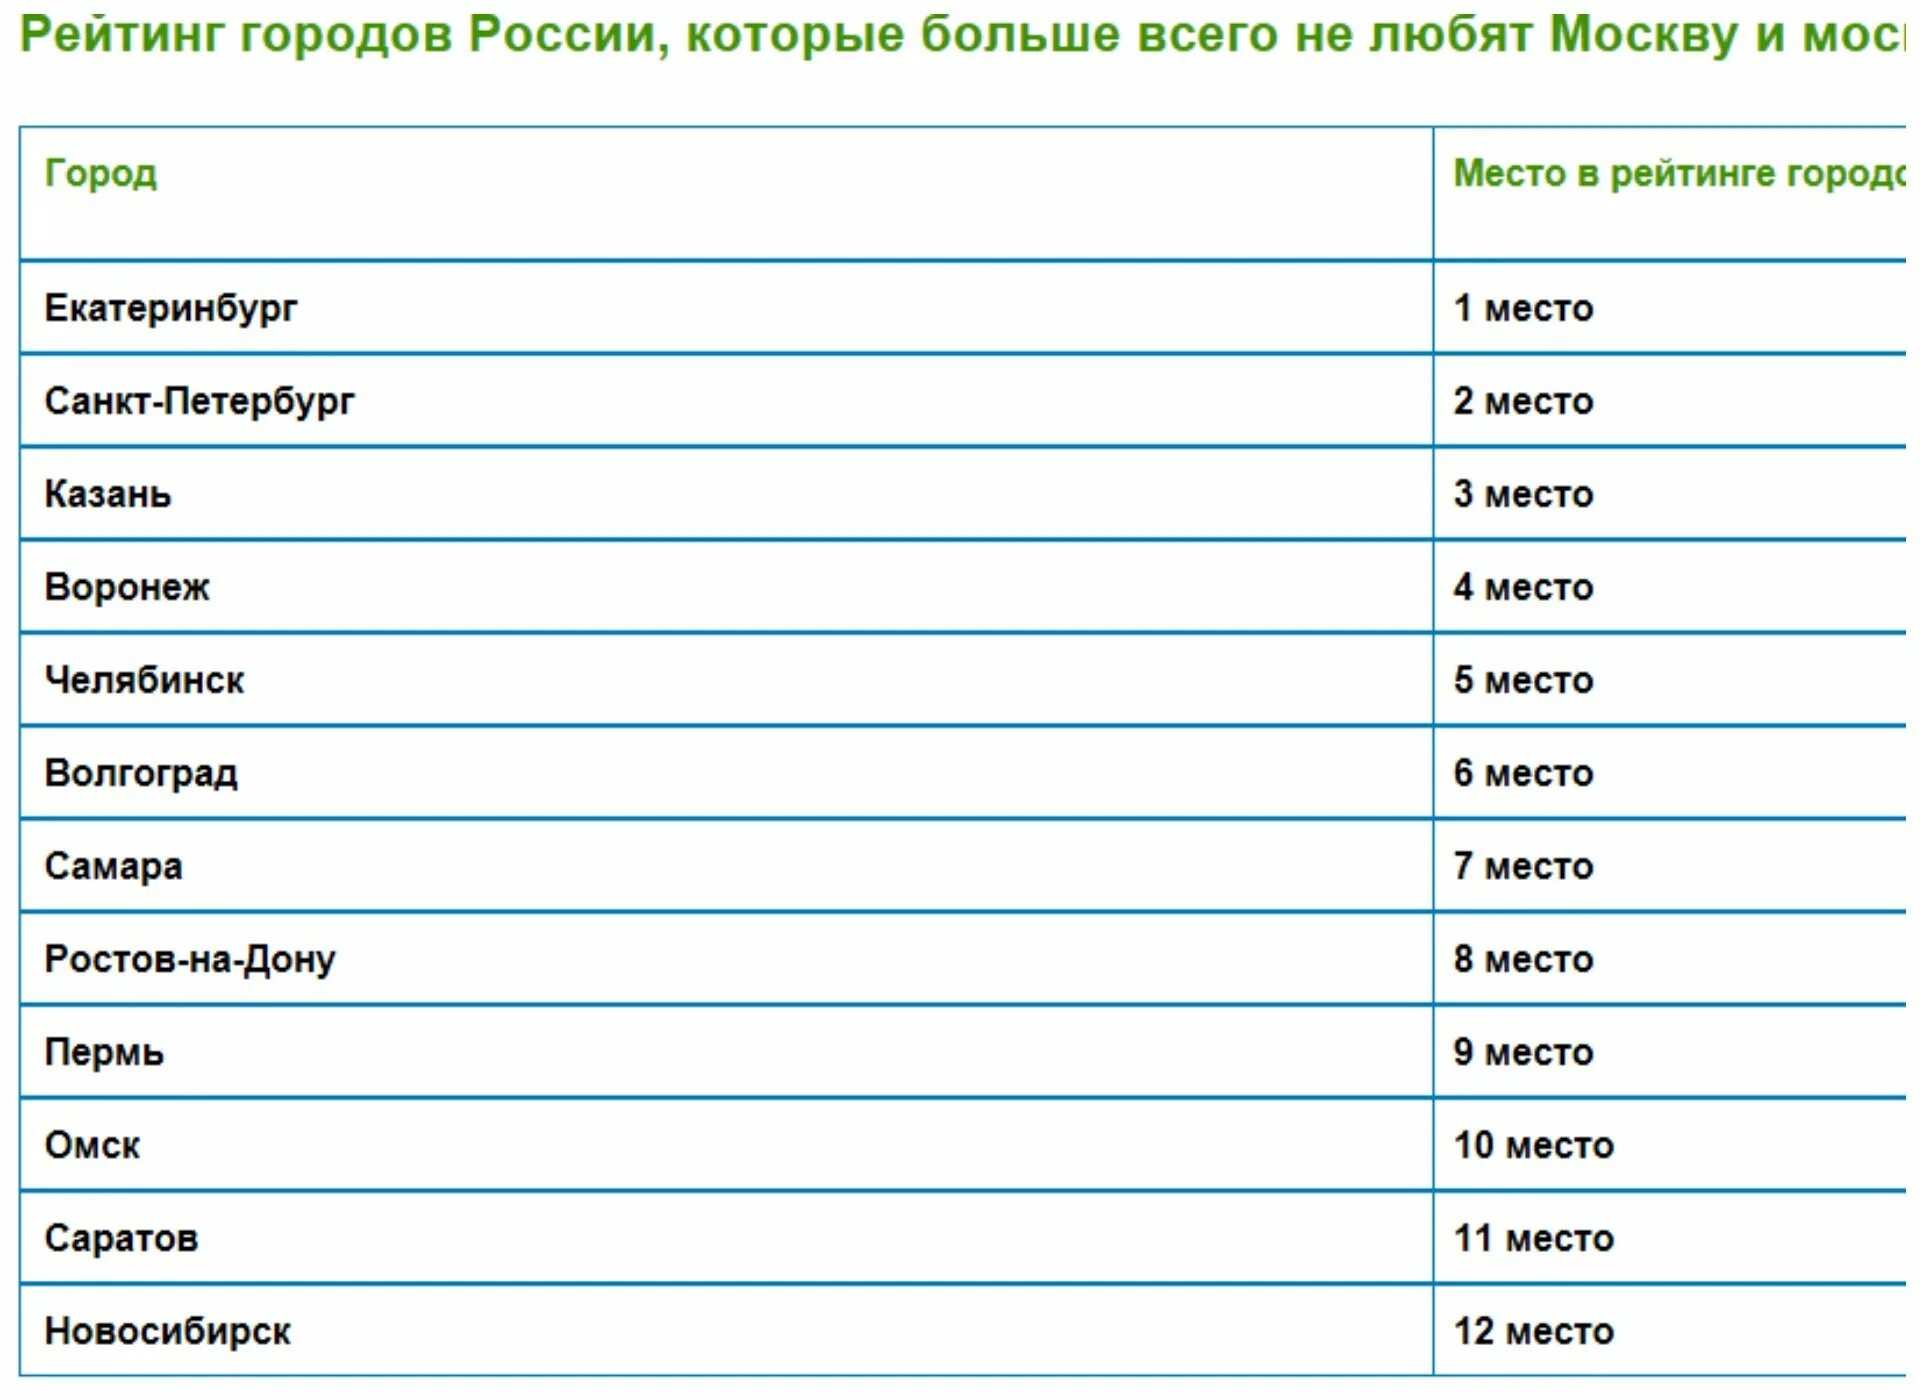 Список всех городов России. Рейтинг городов России по площади. Самые крупные города России список. Какой город идет после Москвы.